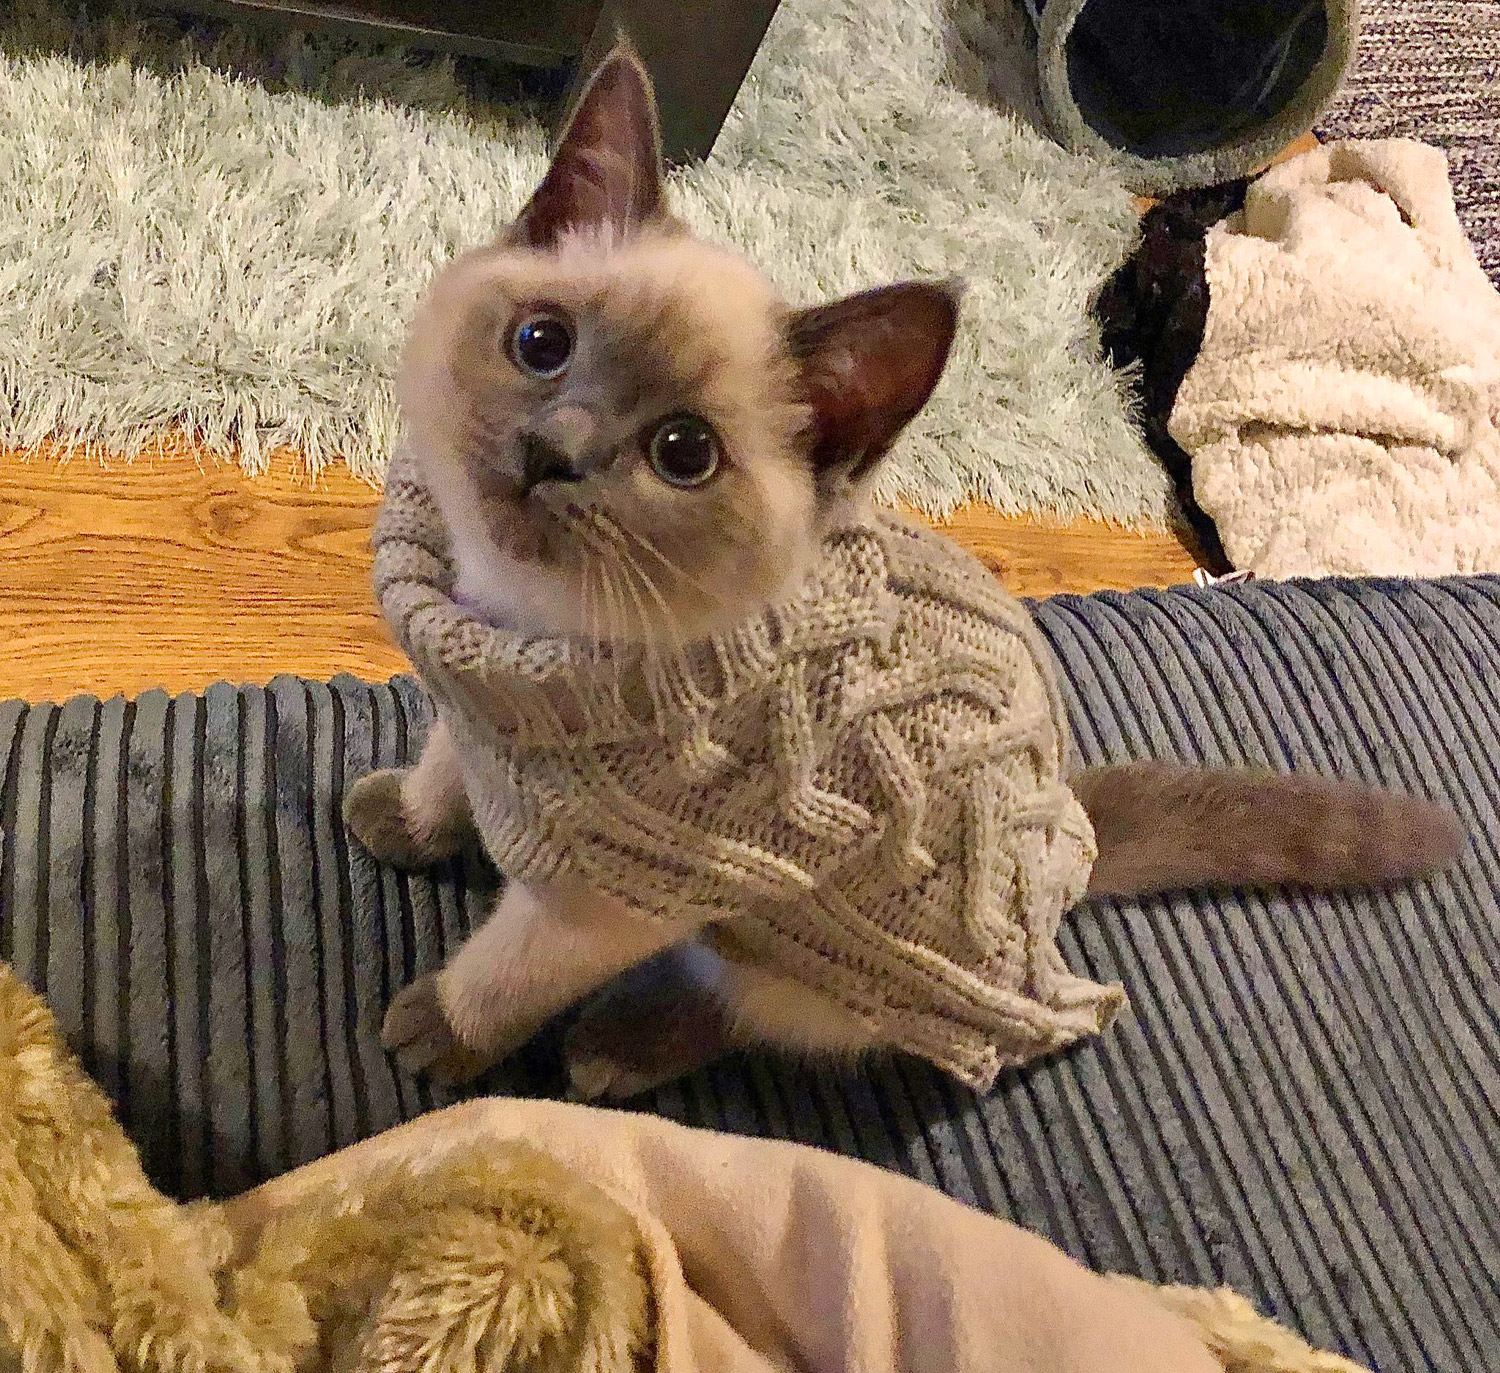 Crochet cat sweaters